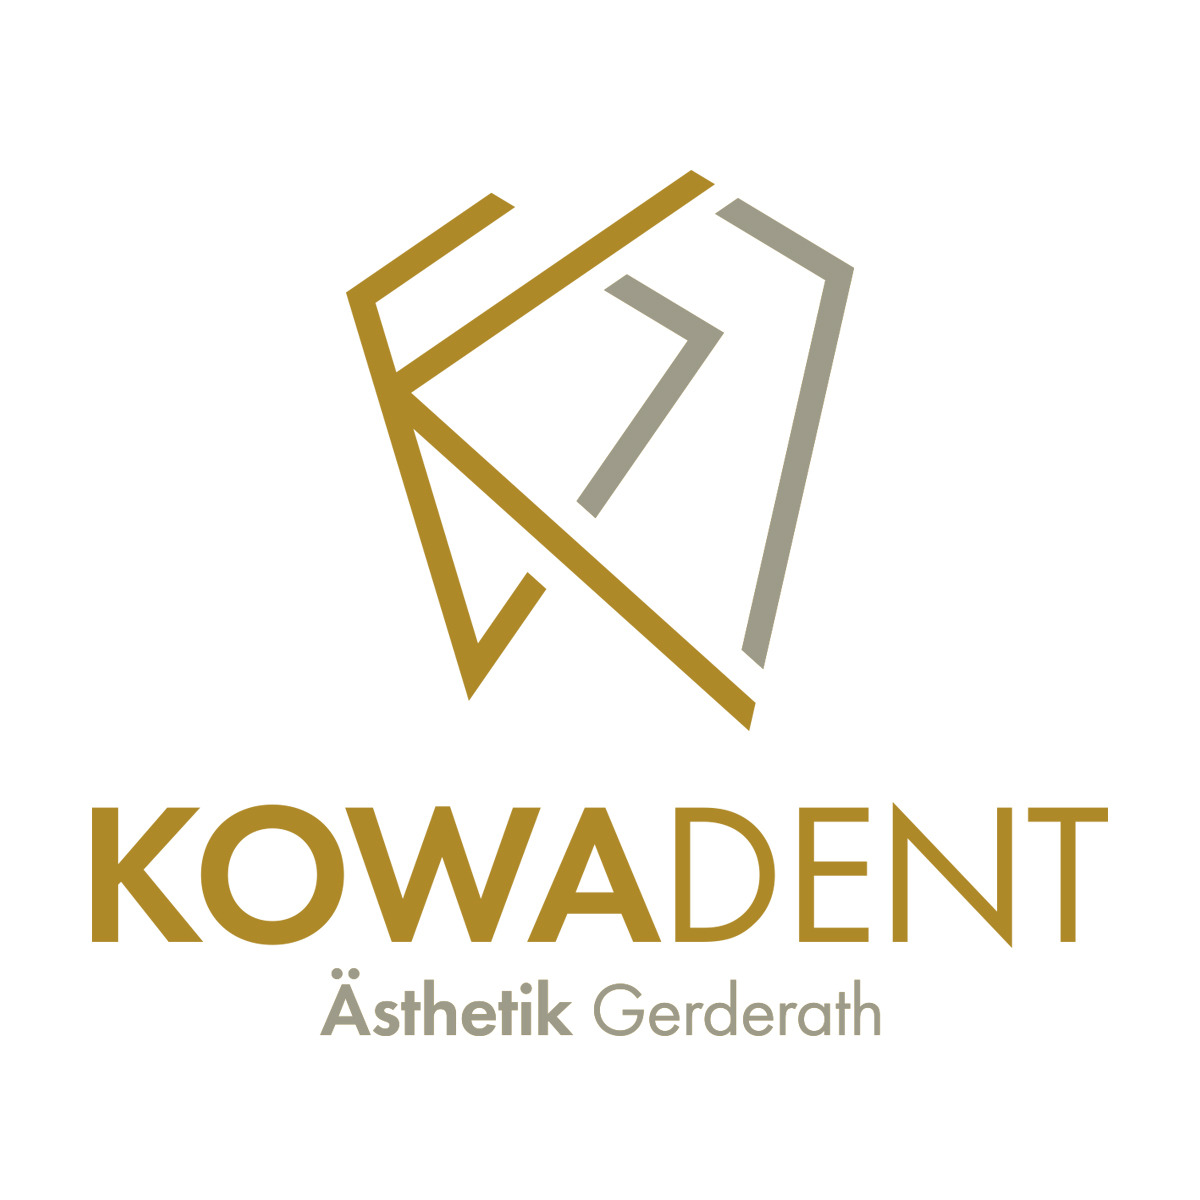 KOWADENT - Zahnmedizin Gerderath Andreas Kowallik & Kollegen in Erkelenz - Logo